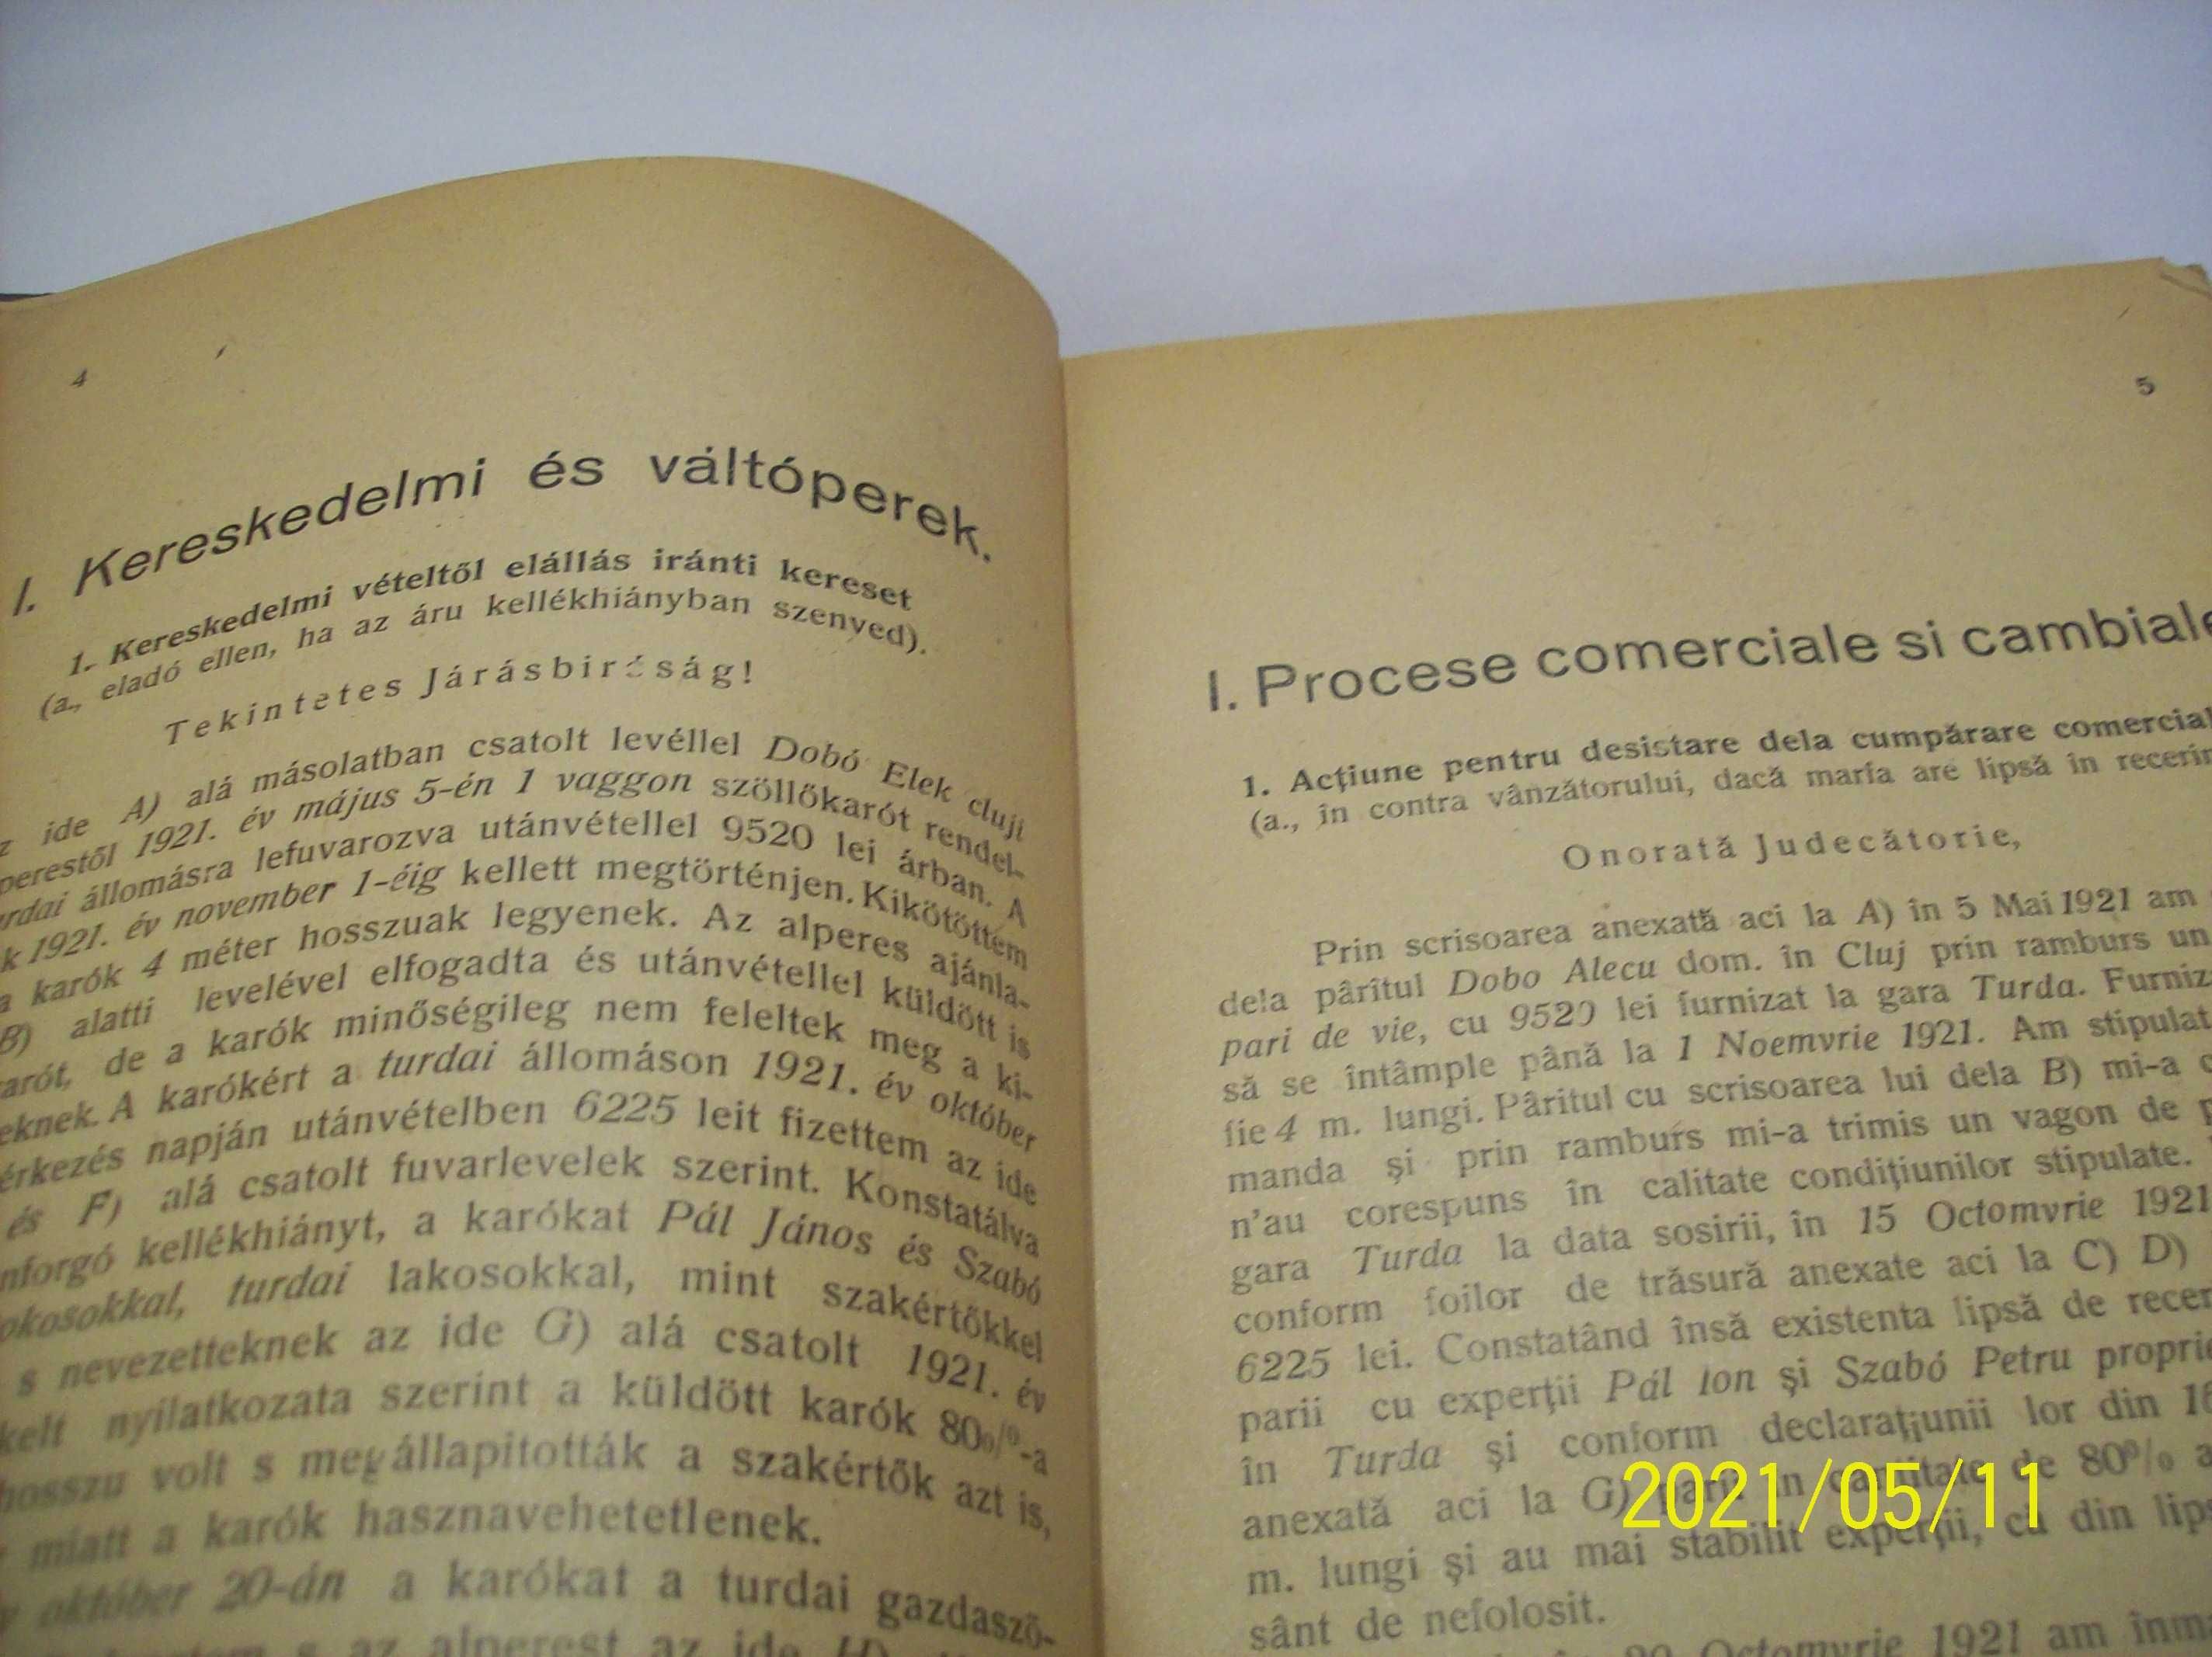 cartea juridica a negustorilor si industriasilor romaneste si ung 1923